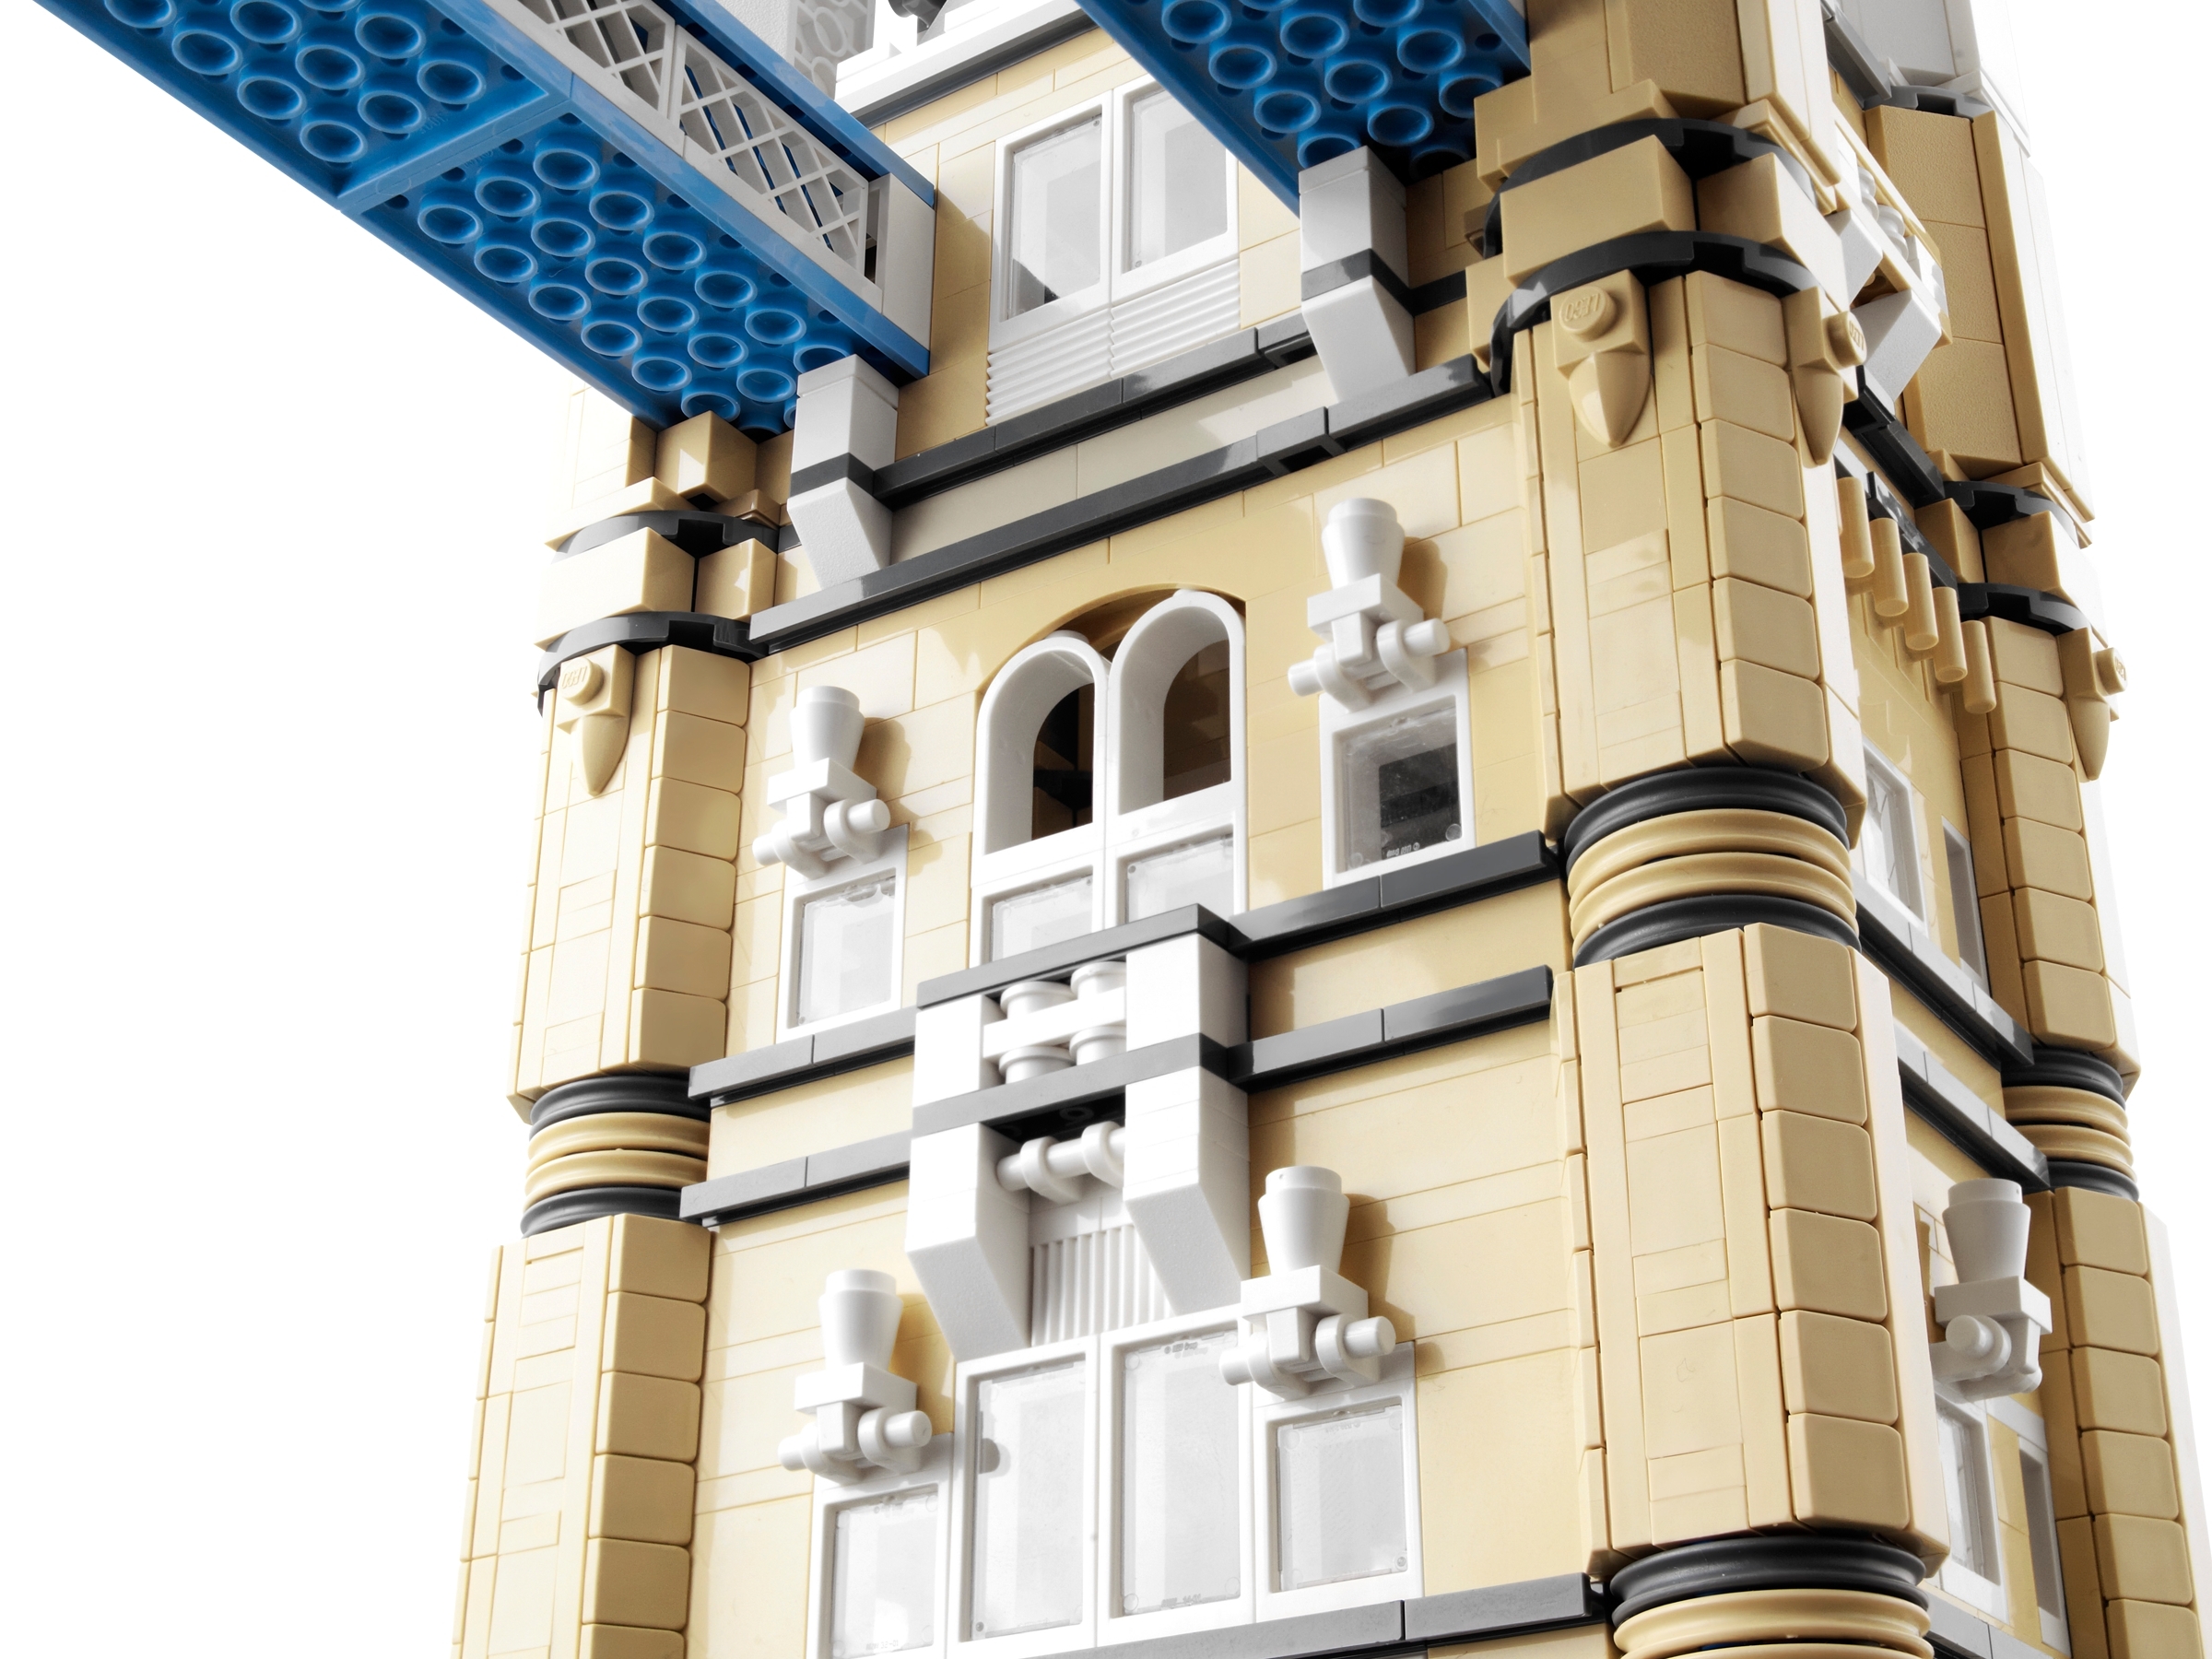 Viaje Retener Touhou El Puente de Londres 10214 | Creator Expert | Oficial LEGO® Shop ES